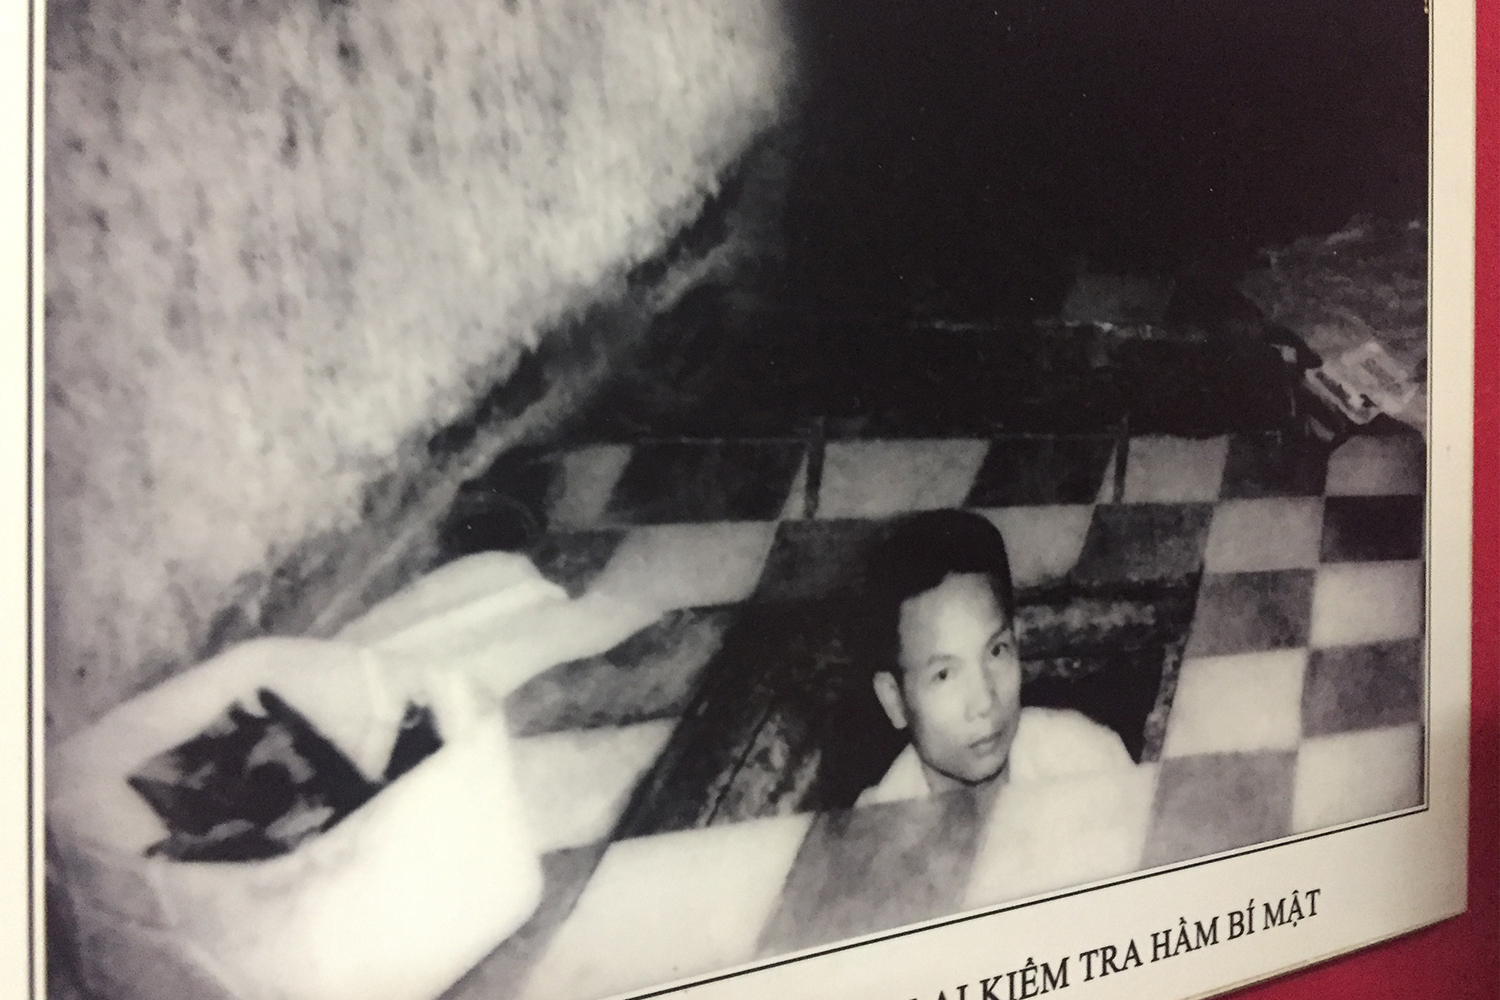 Tran Van Lai dans sa cachette, où il cachait des armes pendant la guerre du Vietnam contre les Américains. 